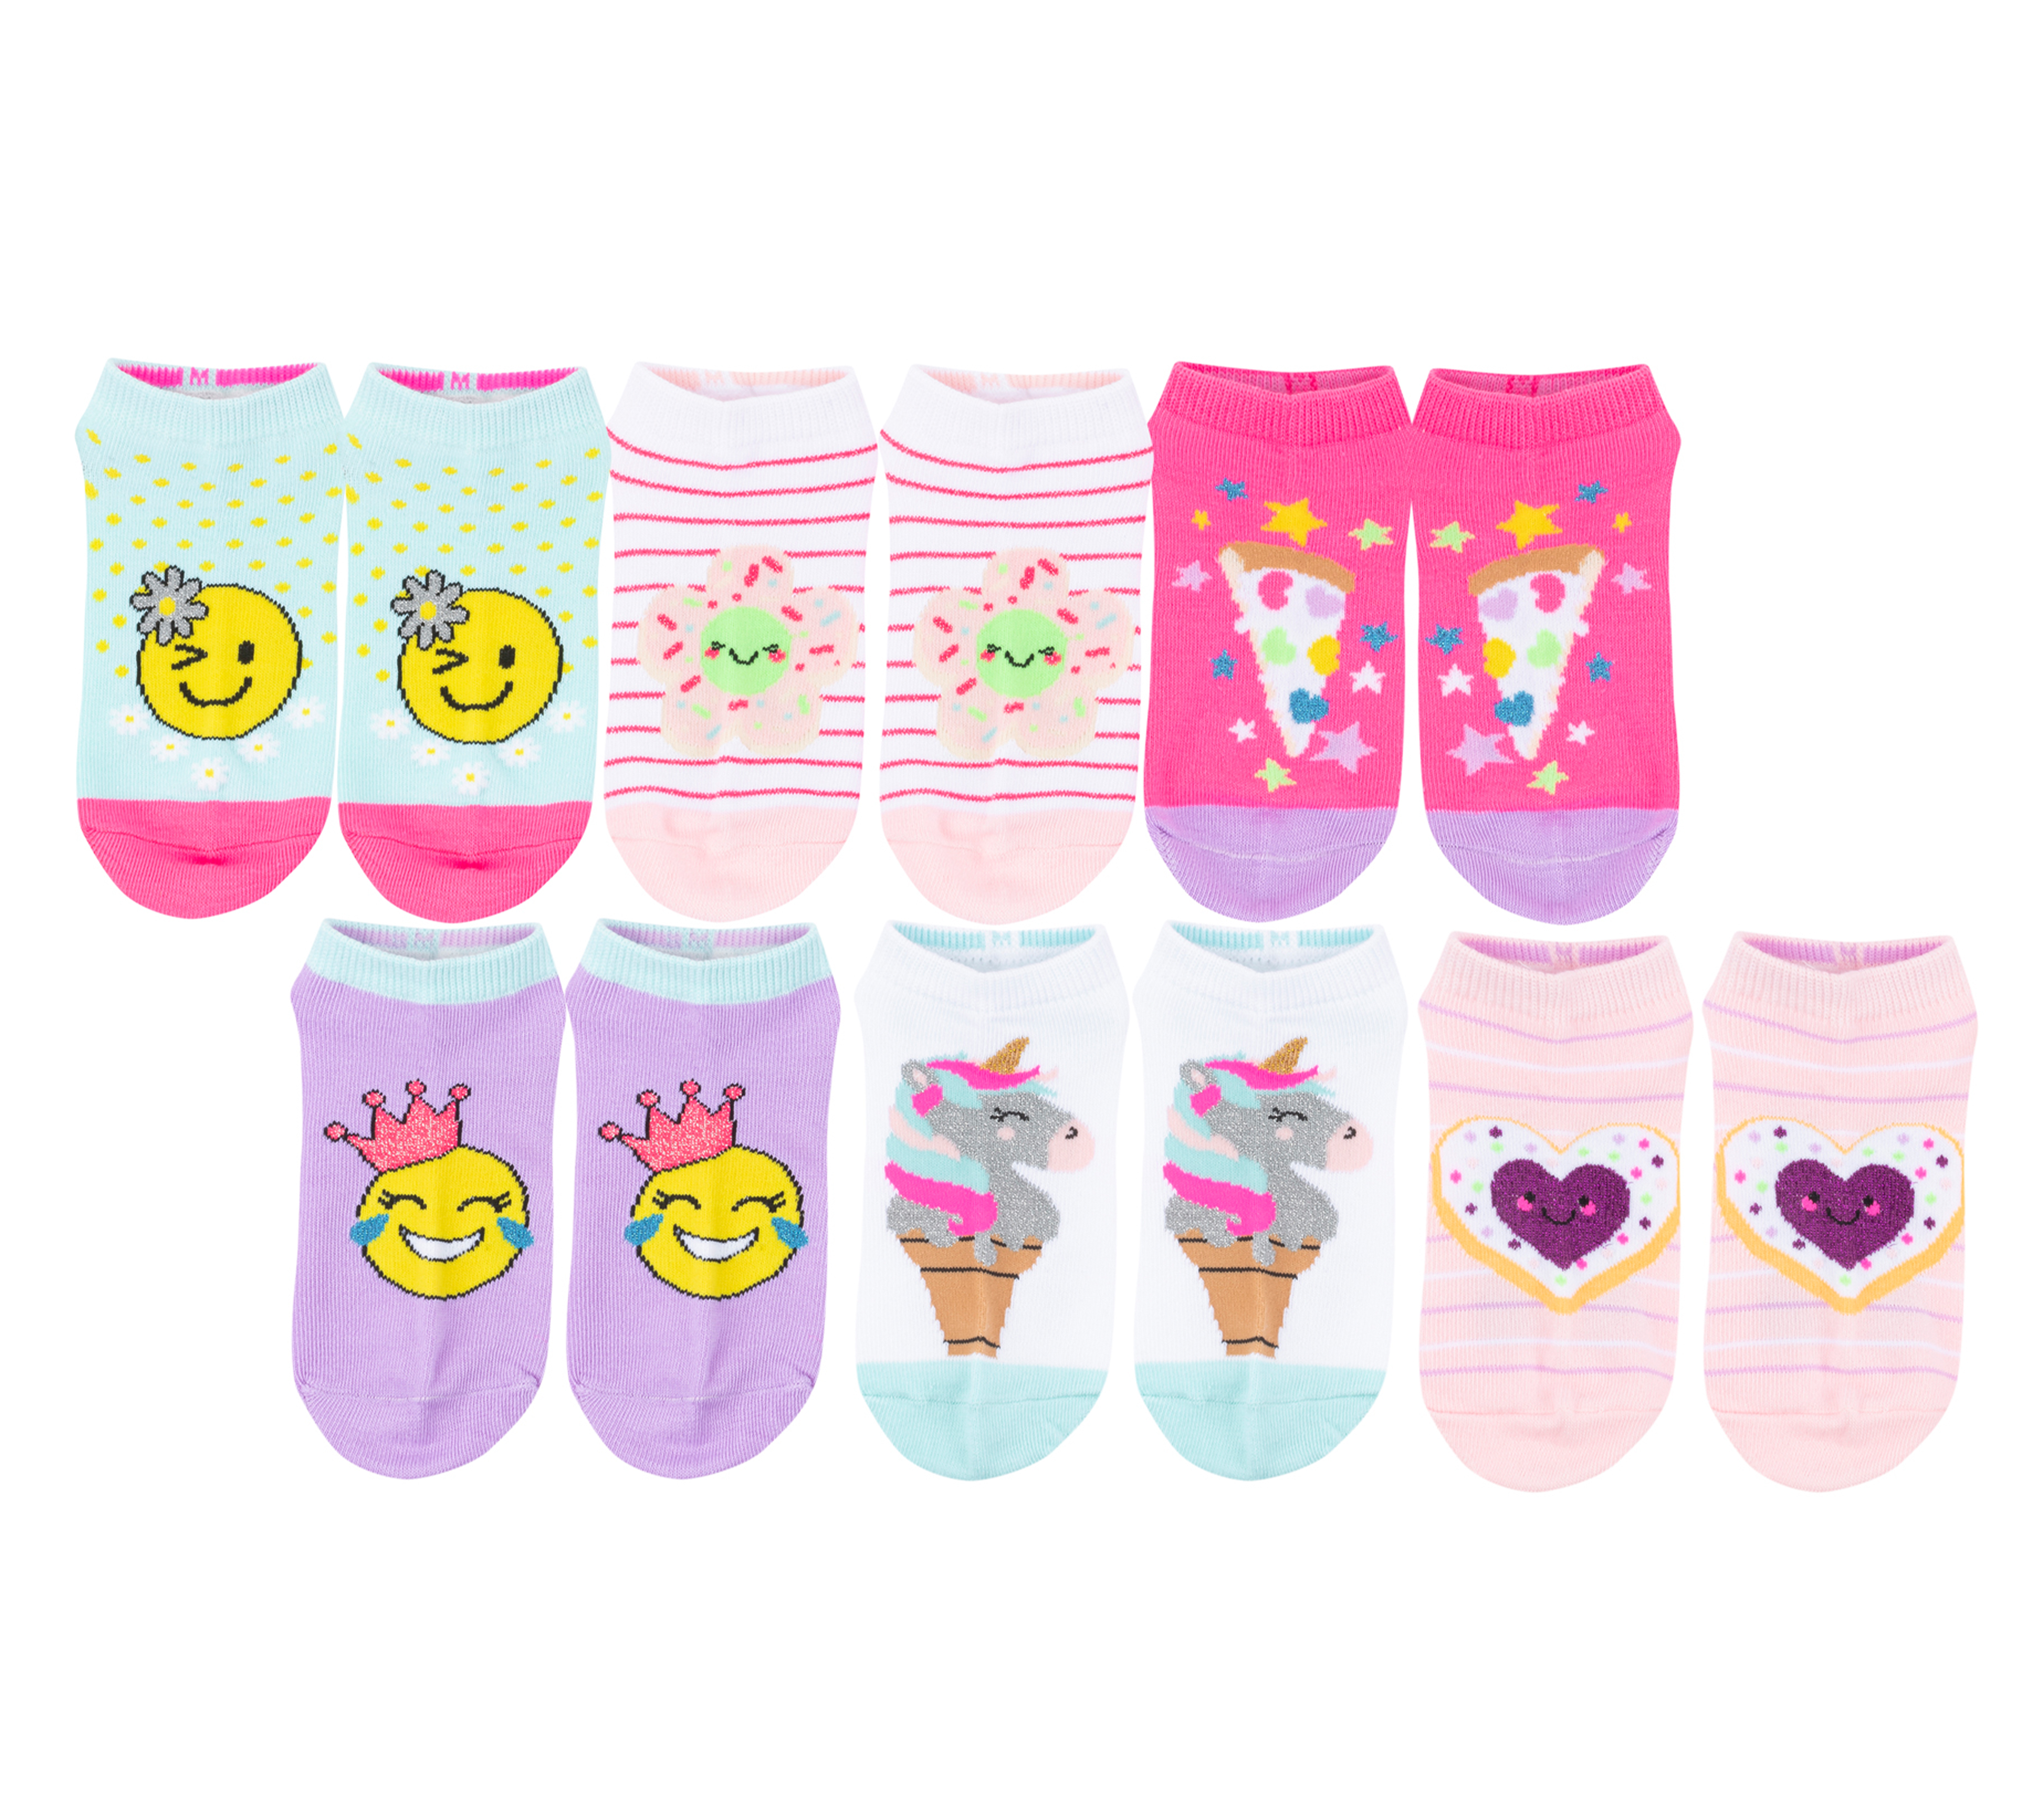 Smiley Floral Socks - 6 Pack